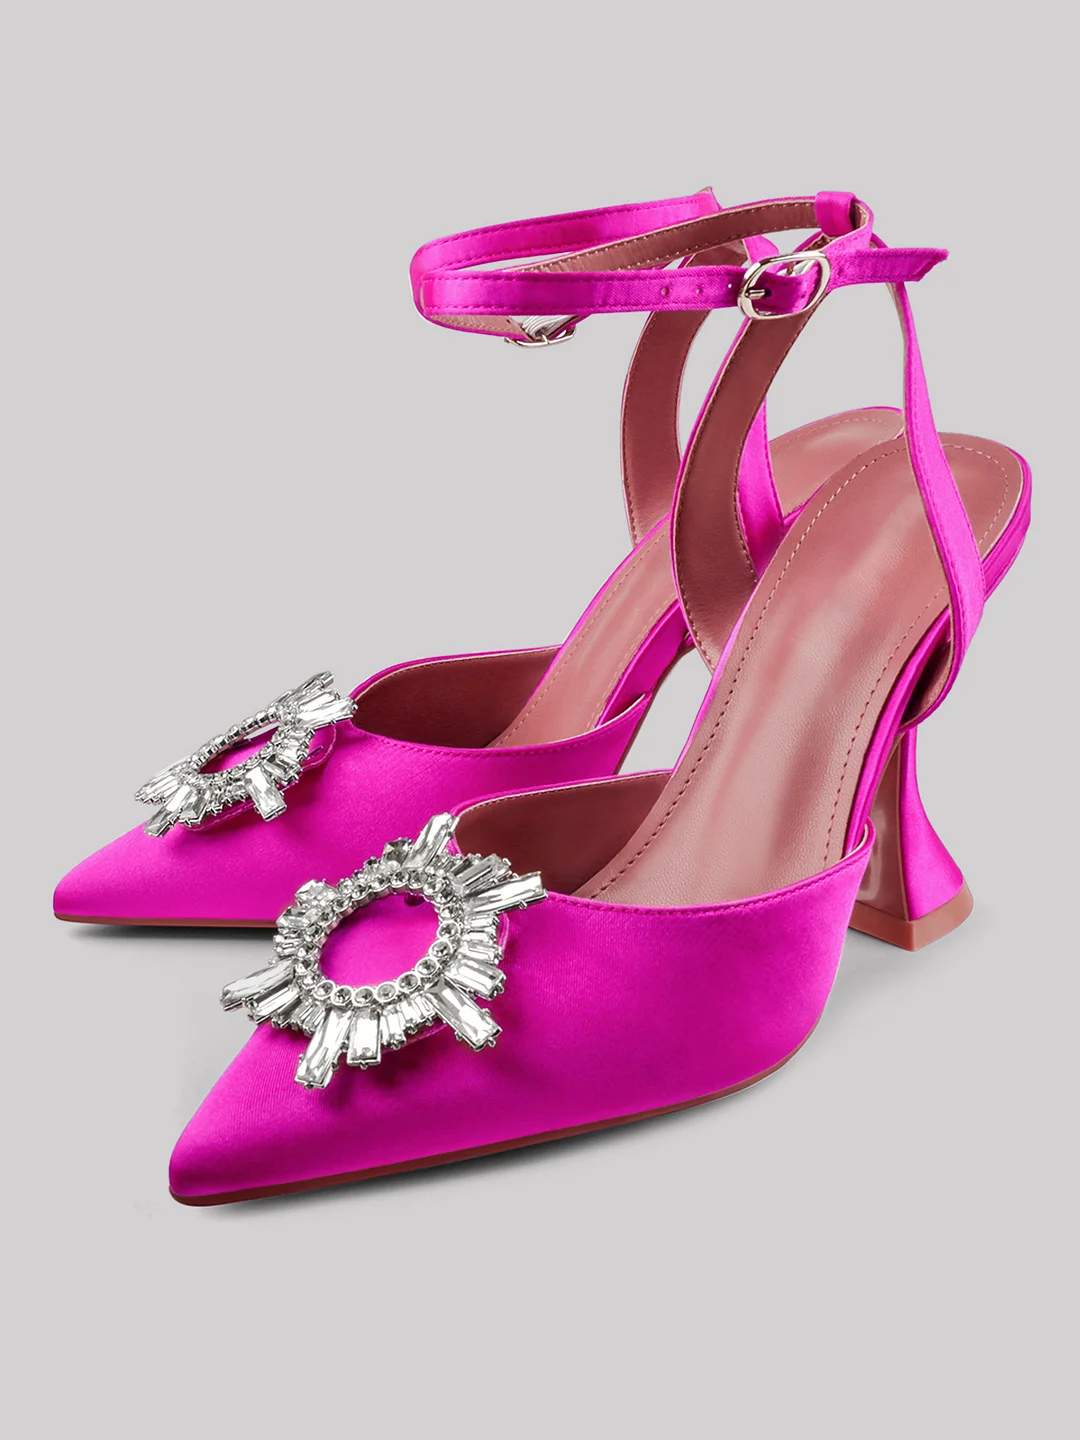 95mm Begum Crystal Pionted Toe Heels Satin Slingback Ankle Strap Sandals Wedding Pumps